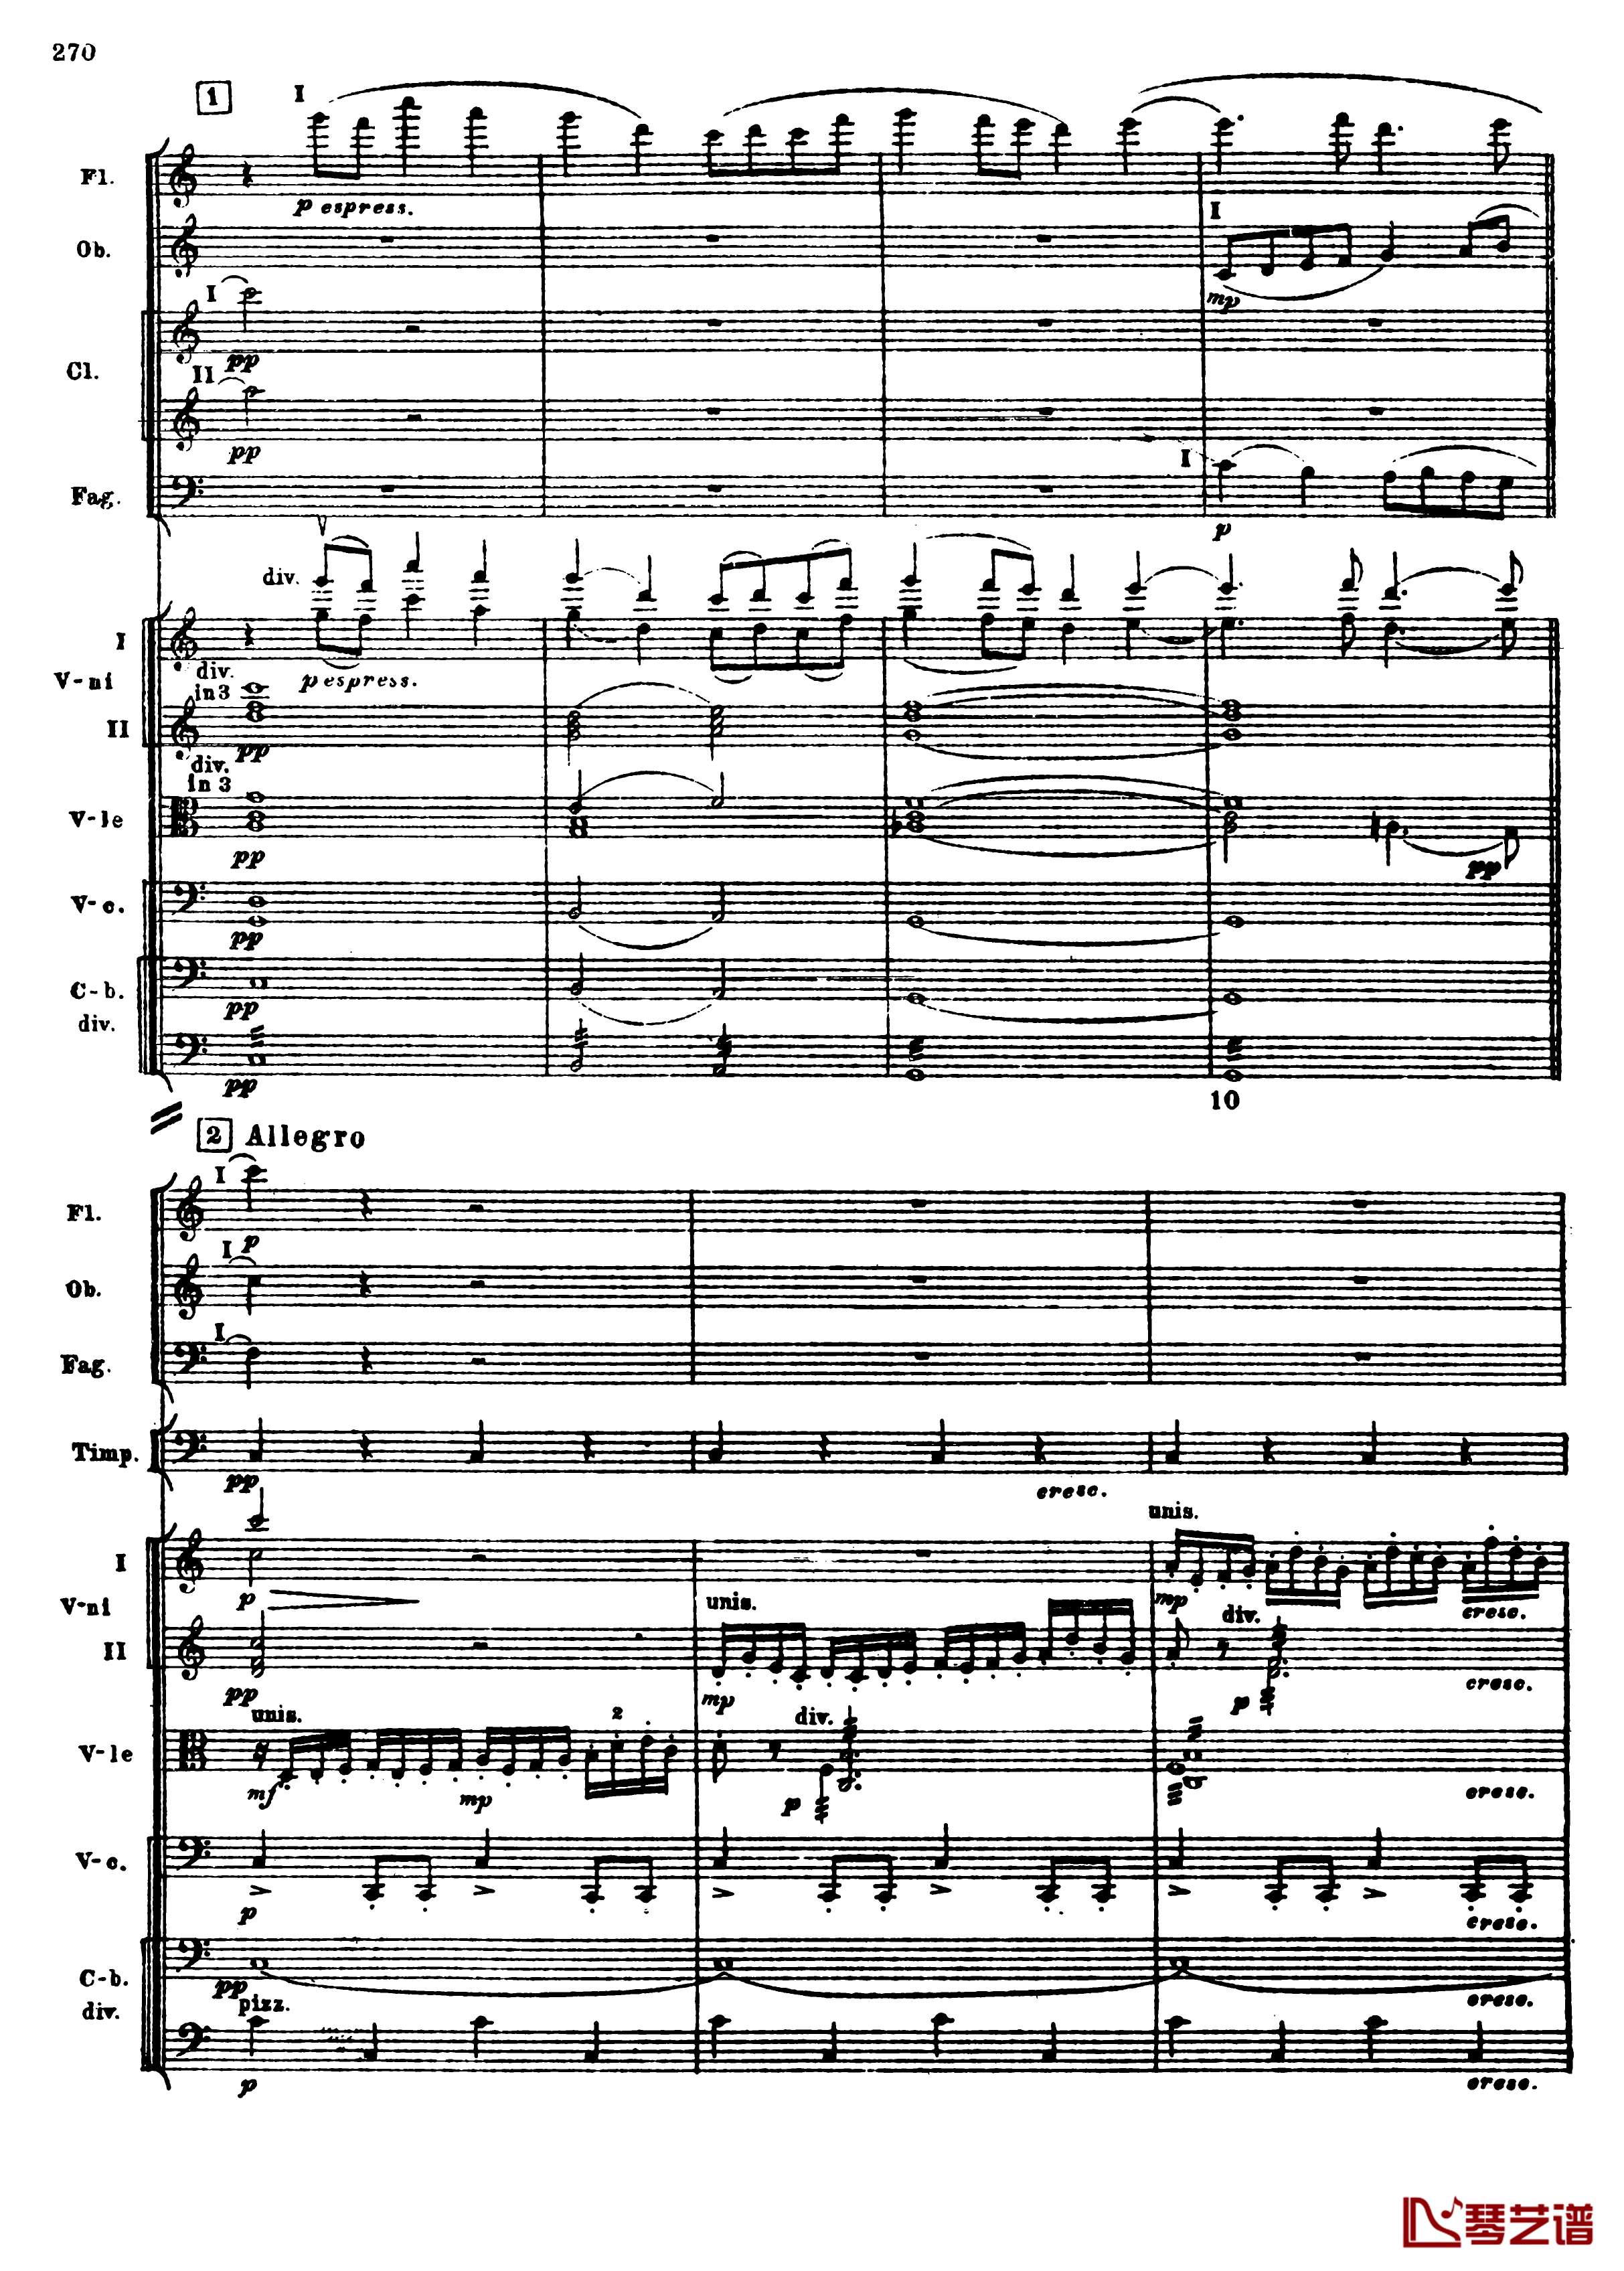 普罗科菲耶夫第三钢琴协奏曲钢琴谱-总谱-普罗科非耶夫2